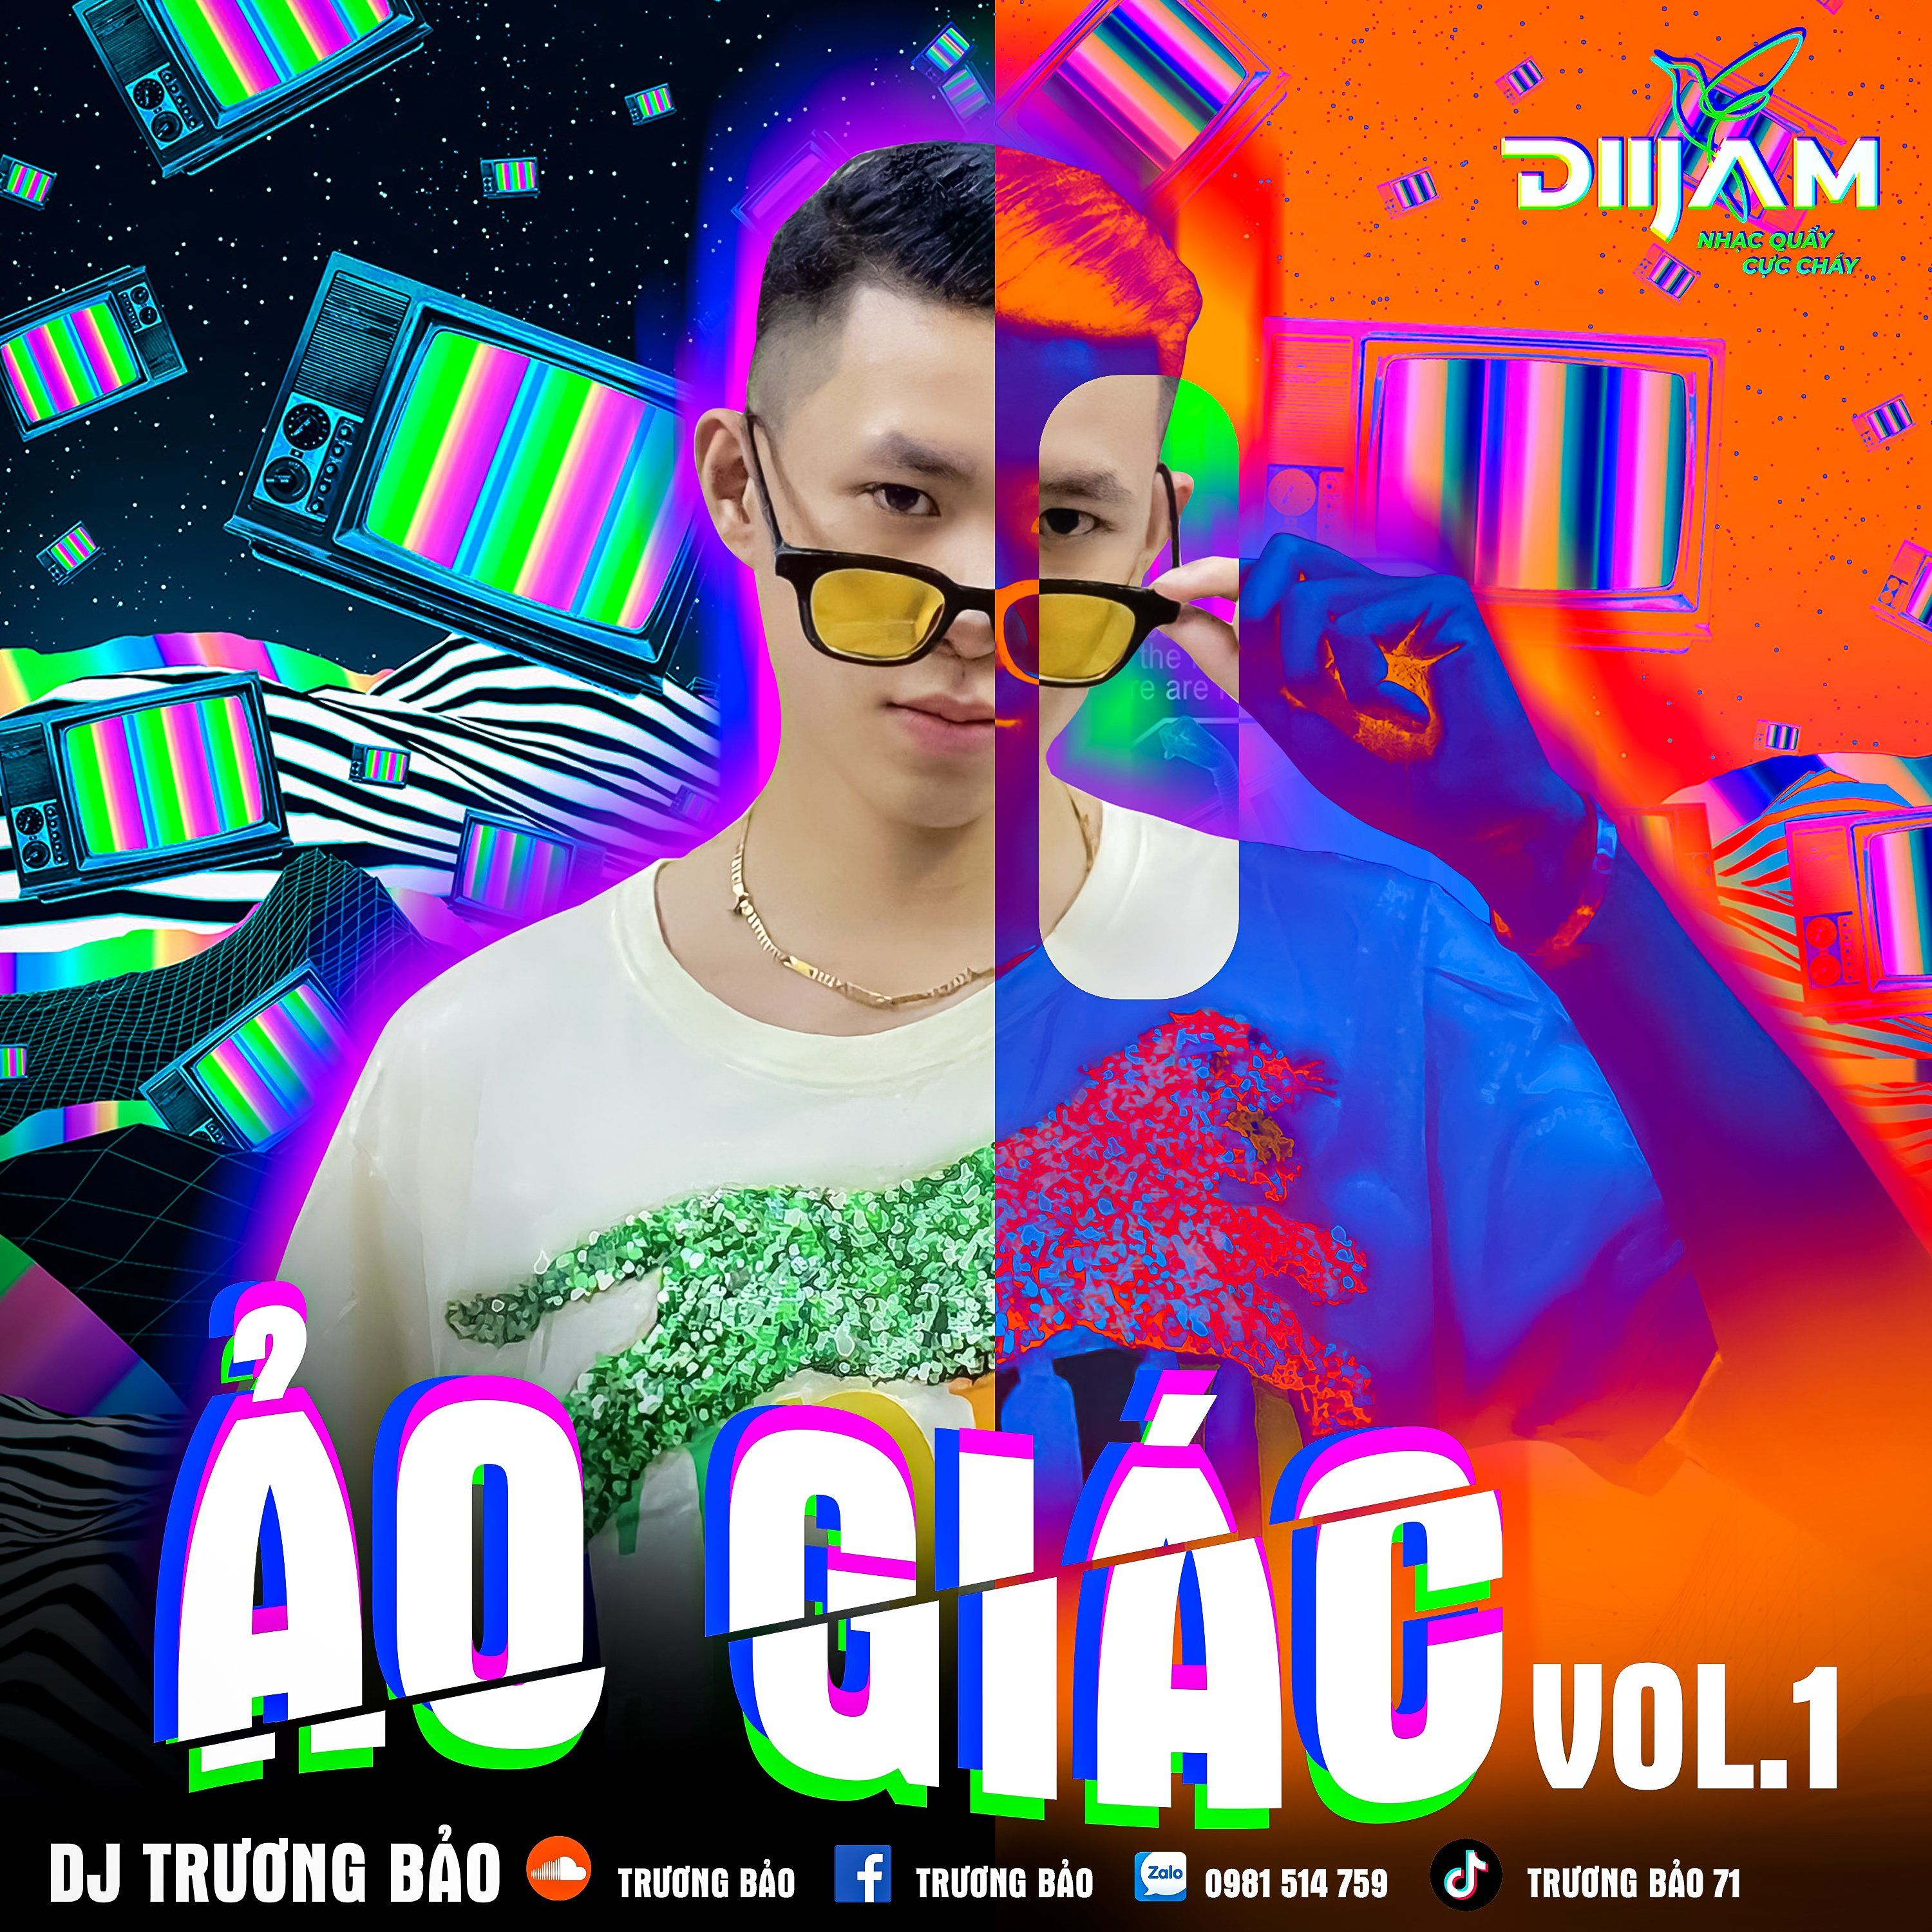 Deskargatu Ảo Giác Vol 1 - DJ Trương Bảo (Nonstop Diijam)